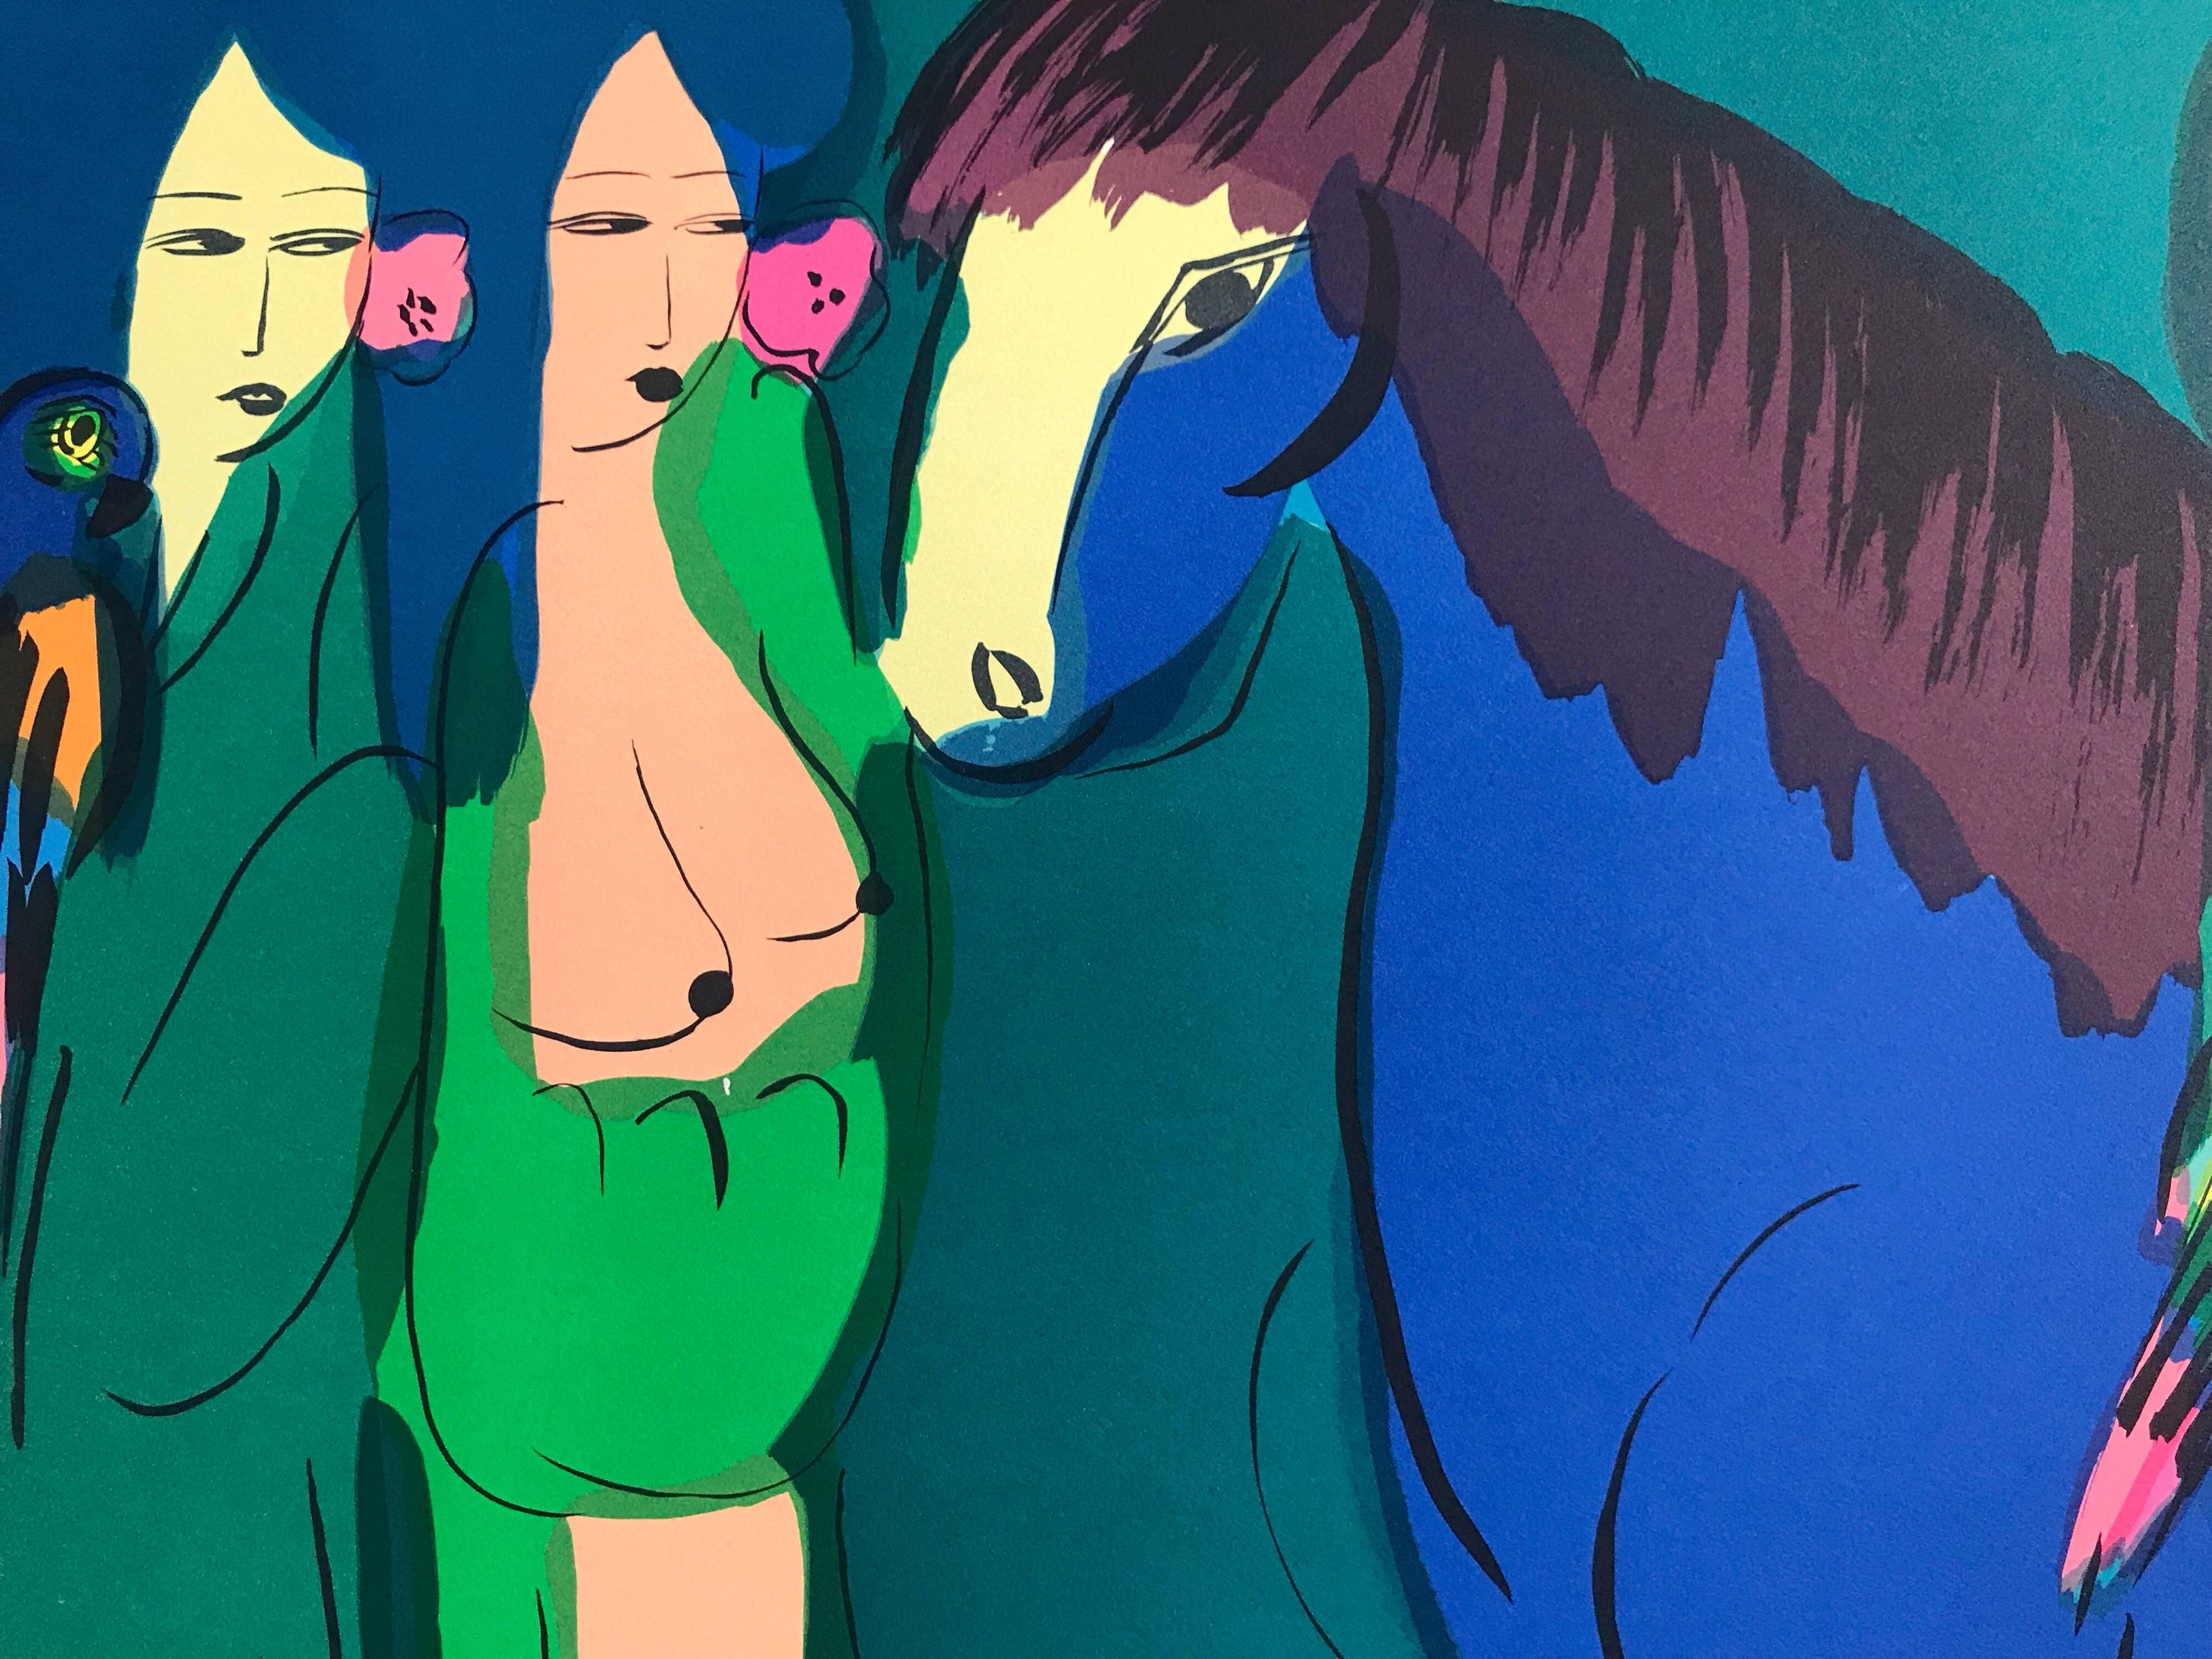 Lithographie signée « BLUE HORSE, THREE GEISHAS », femmes asiatiques, perroquets, bleu sarcelle - Bleu Figurative Print par Walasse Ting